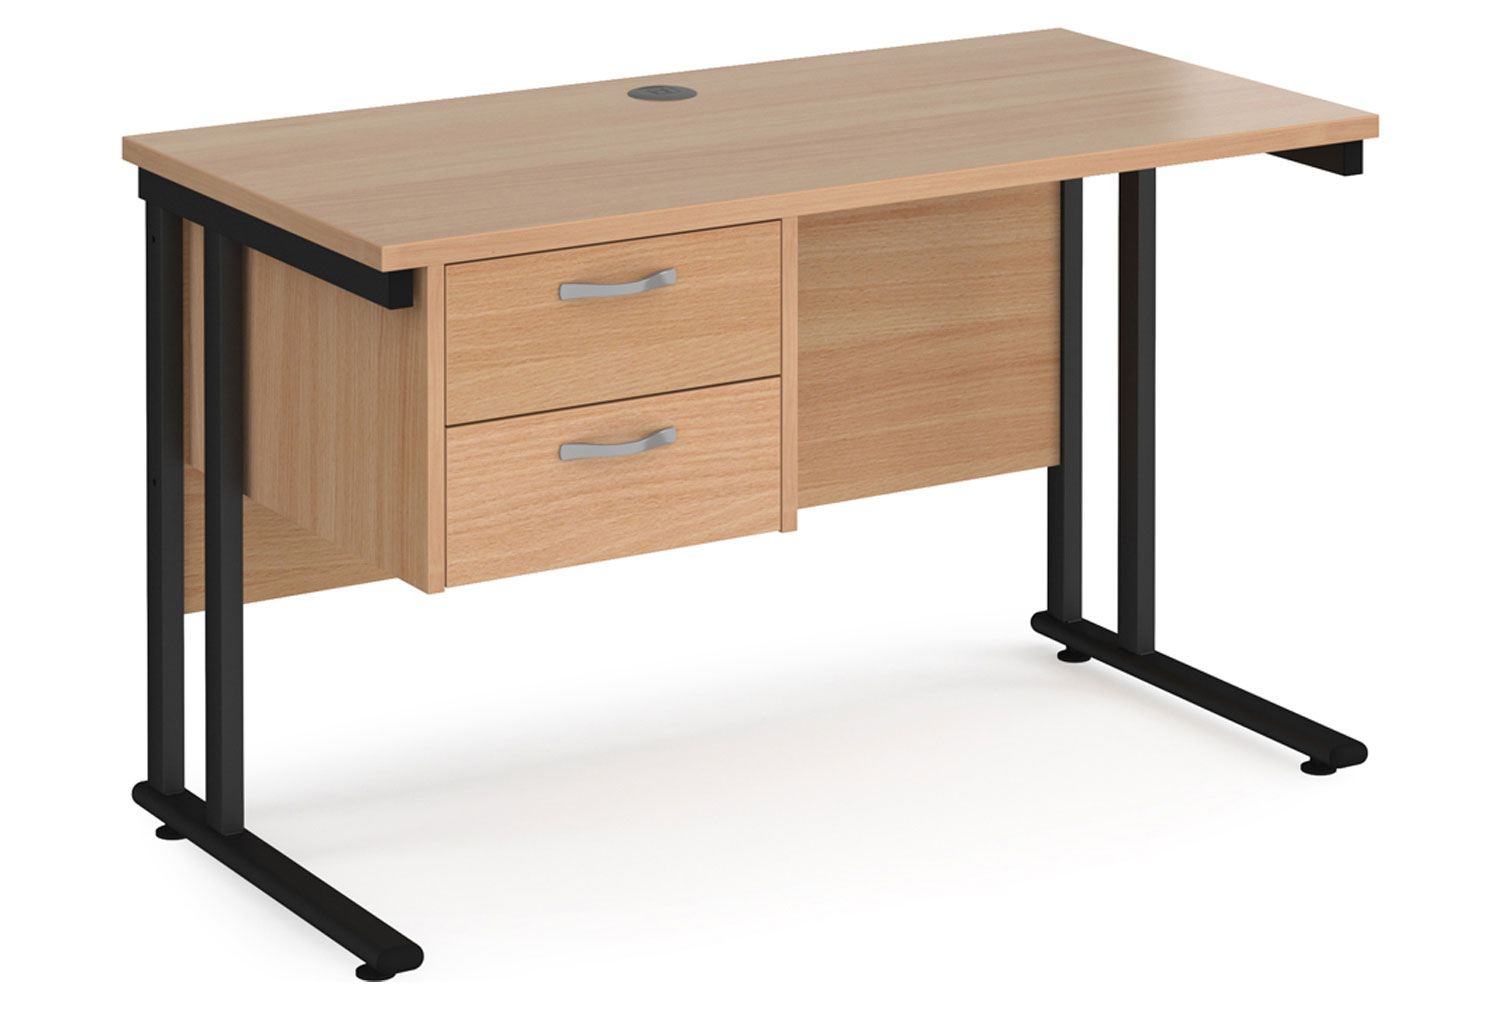 Value Line Deluxe C-Leg Narrow Rectangular Office Desk 2 Drawers (Black Legs), 120w60dx73h (cm), Beech